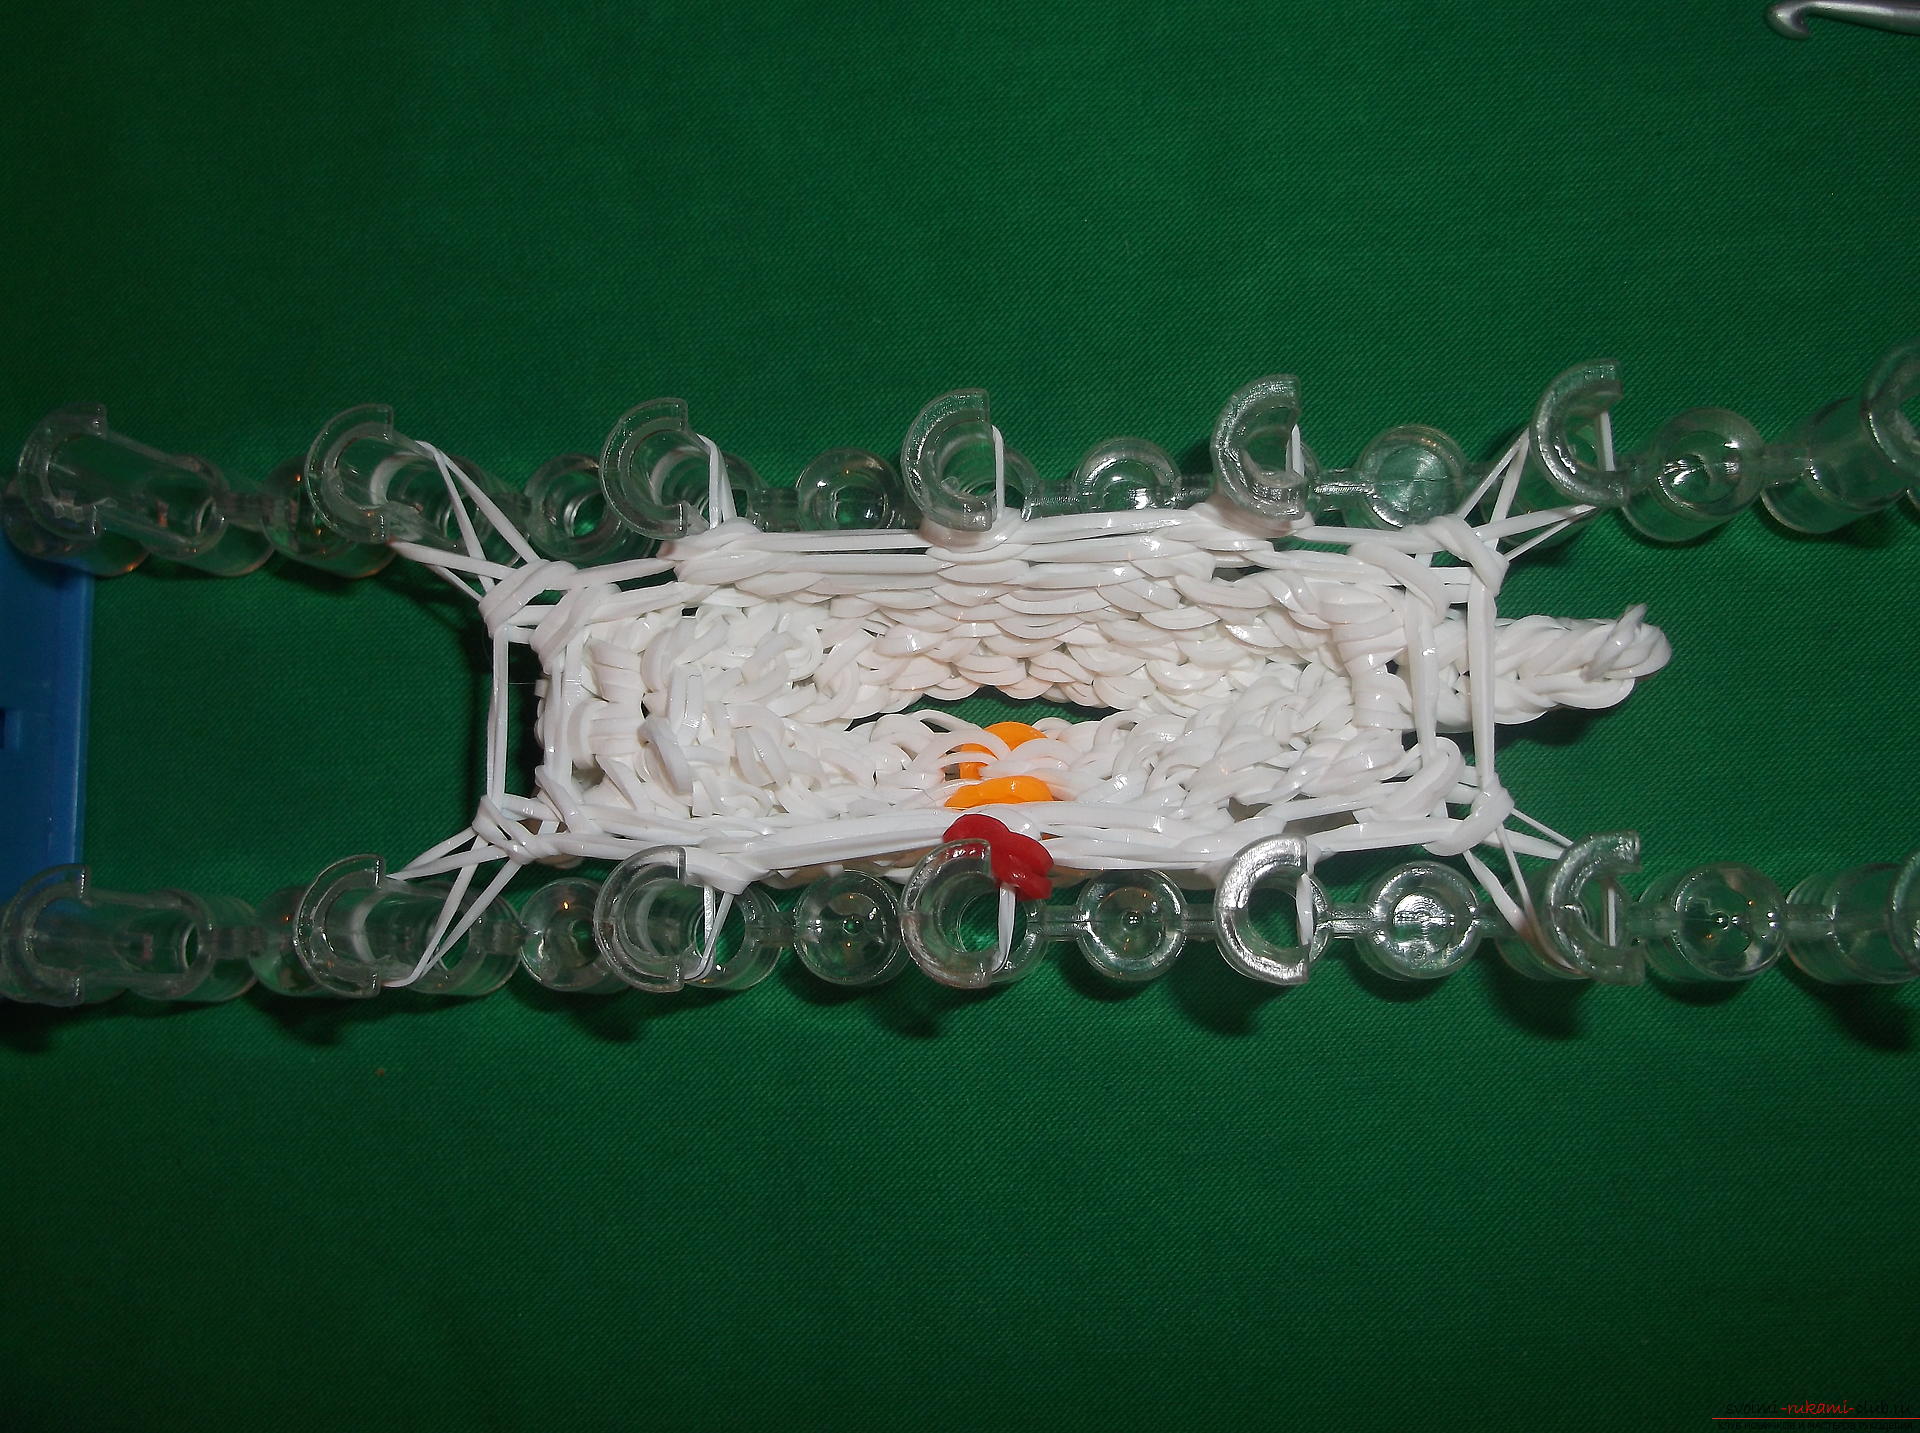 Фото к уроку по плетению из резиночек снеговичка к новогодним праздникам. Фото №8